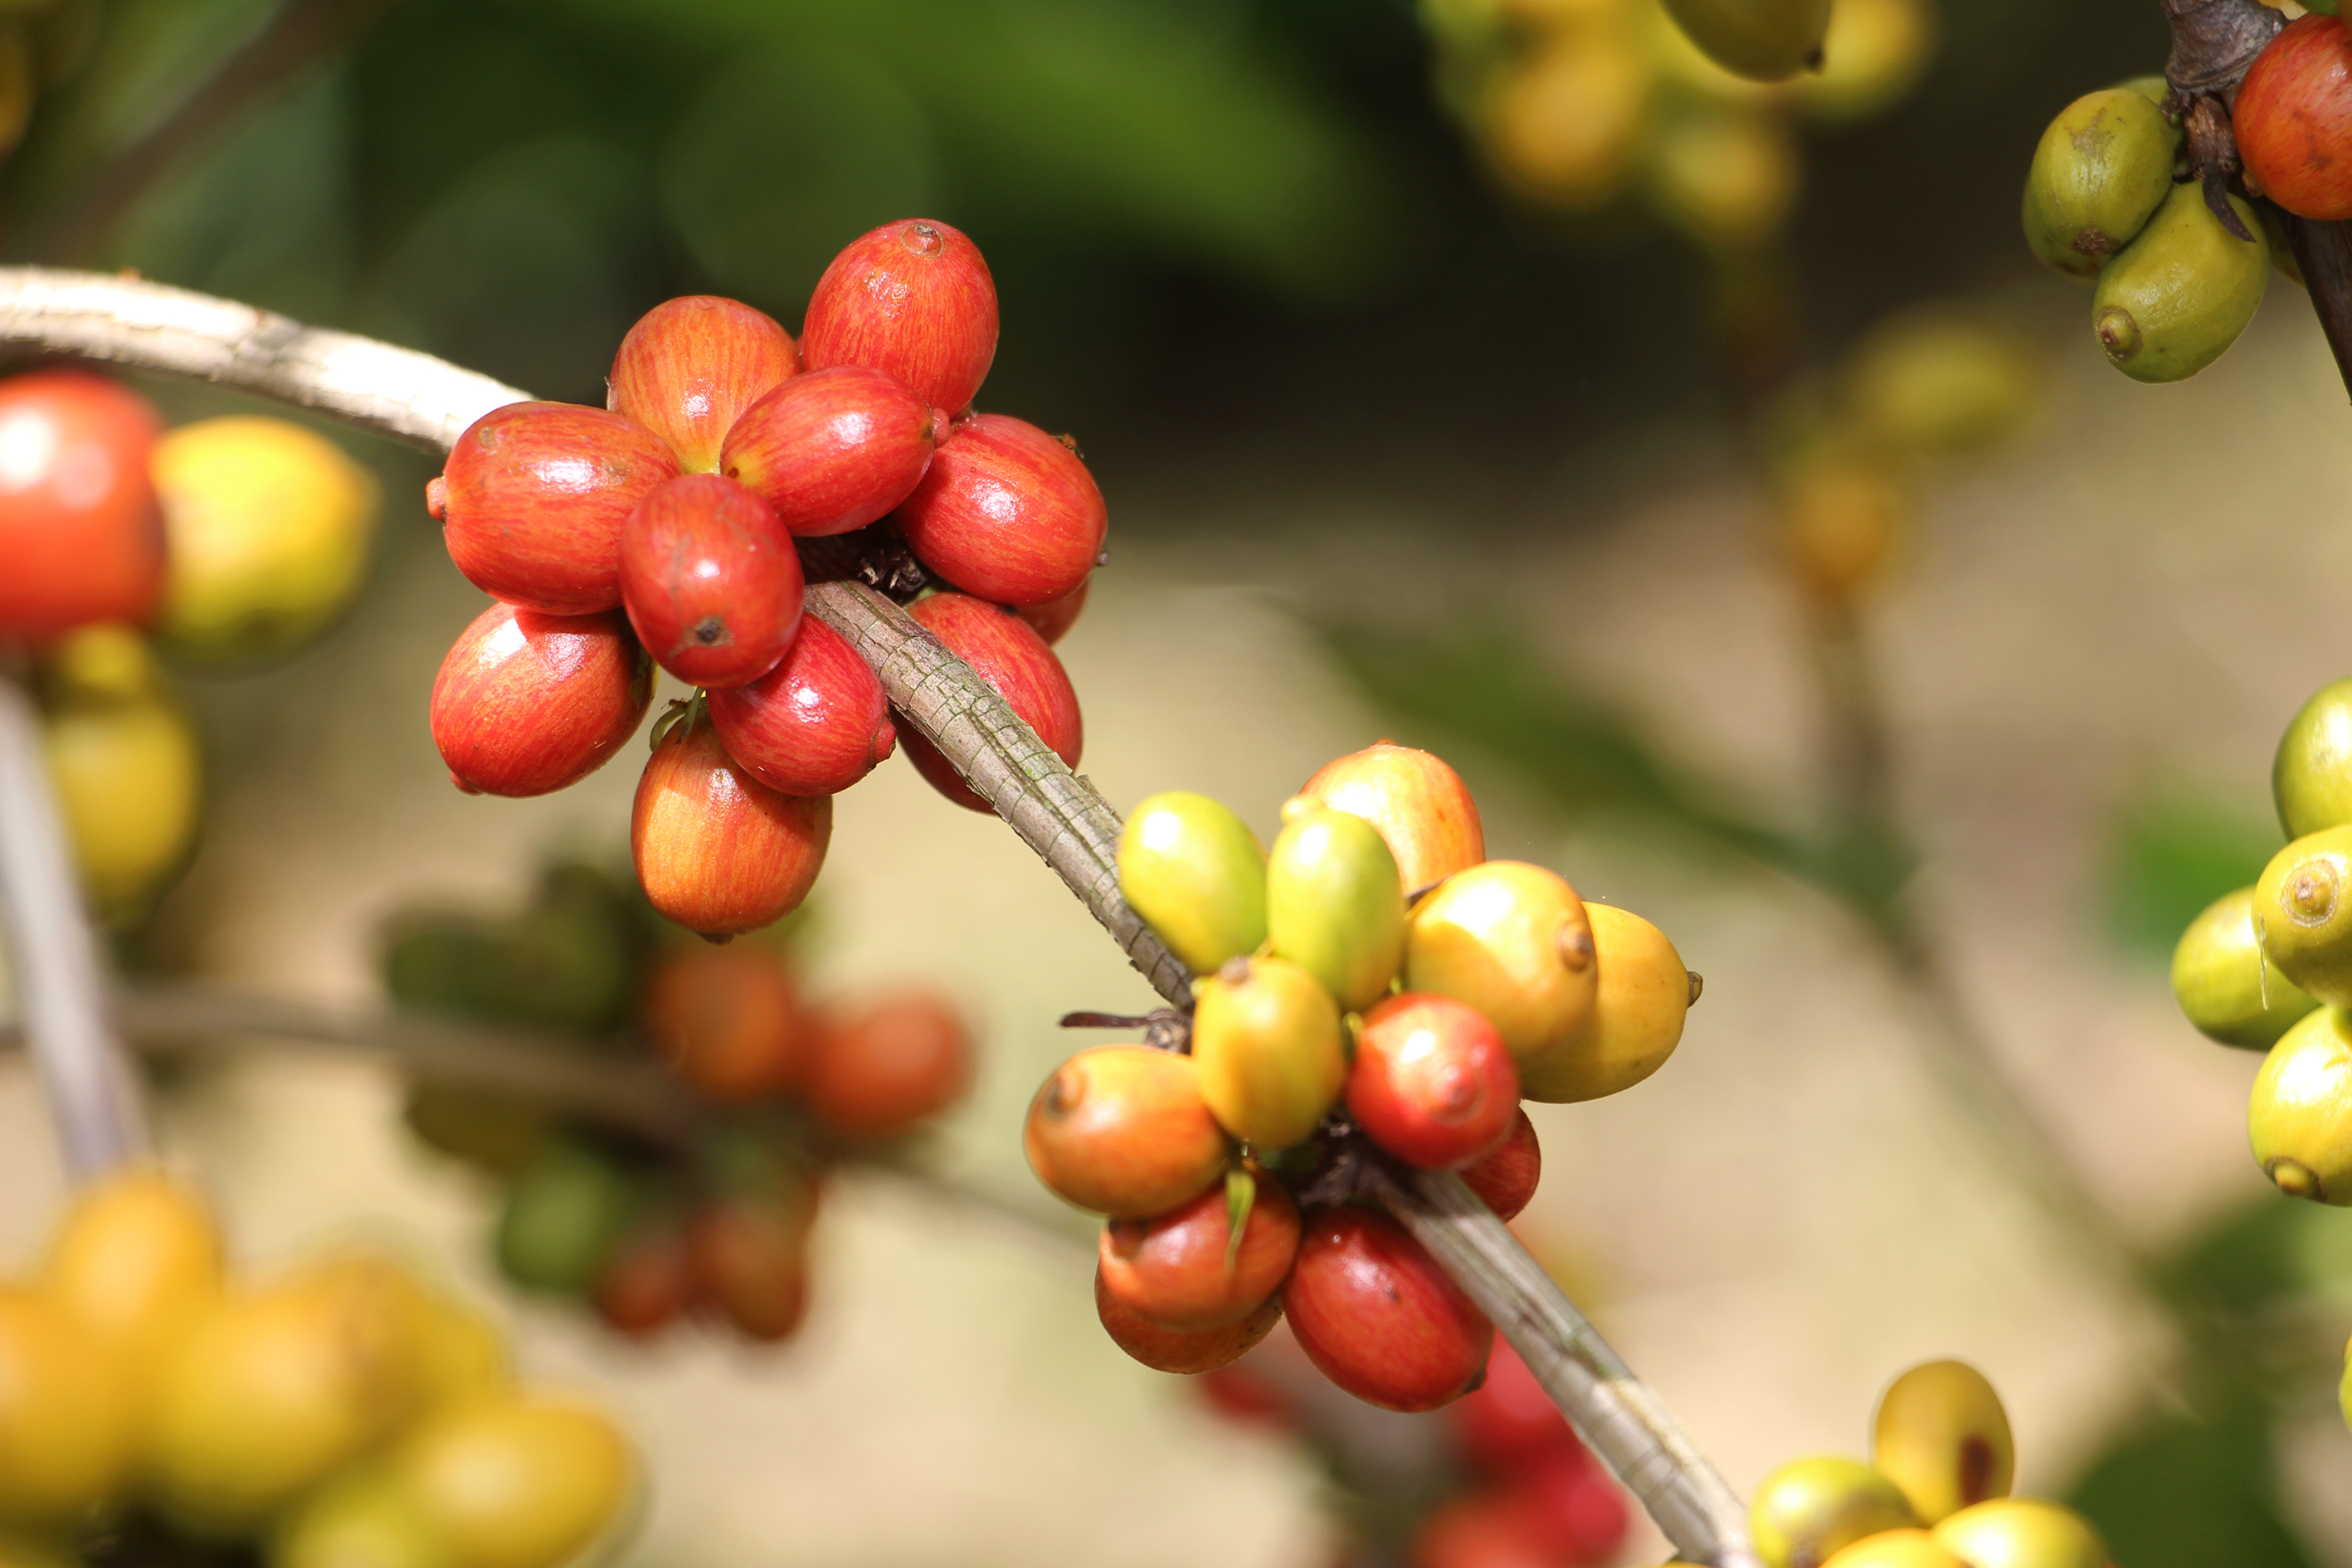 Emater-MG e prefeituras incentivam cultivo de café conilon no Vale